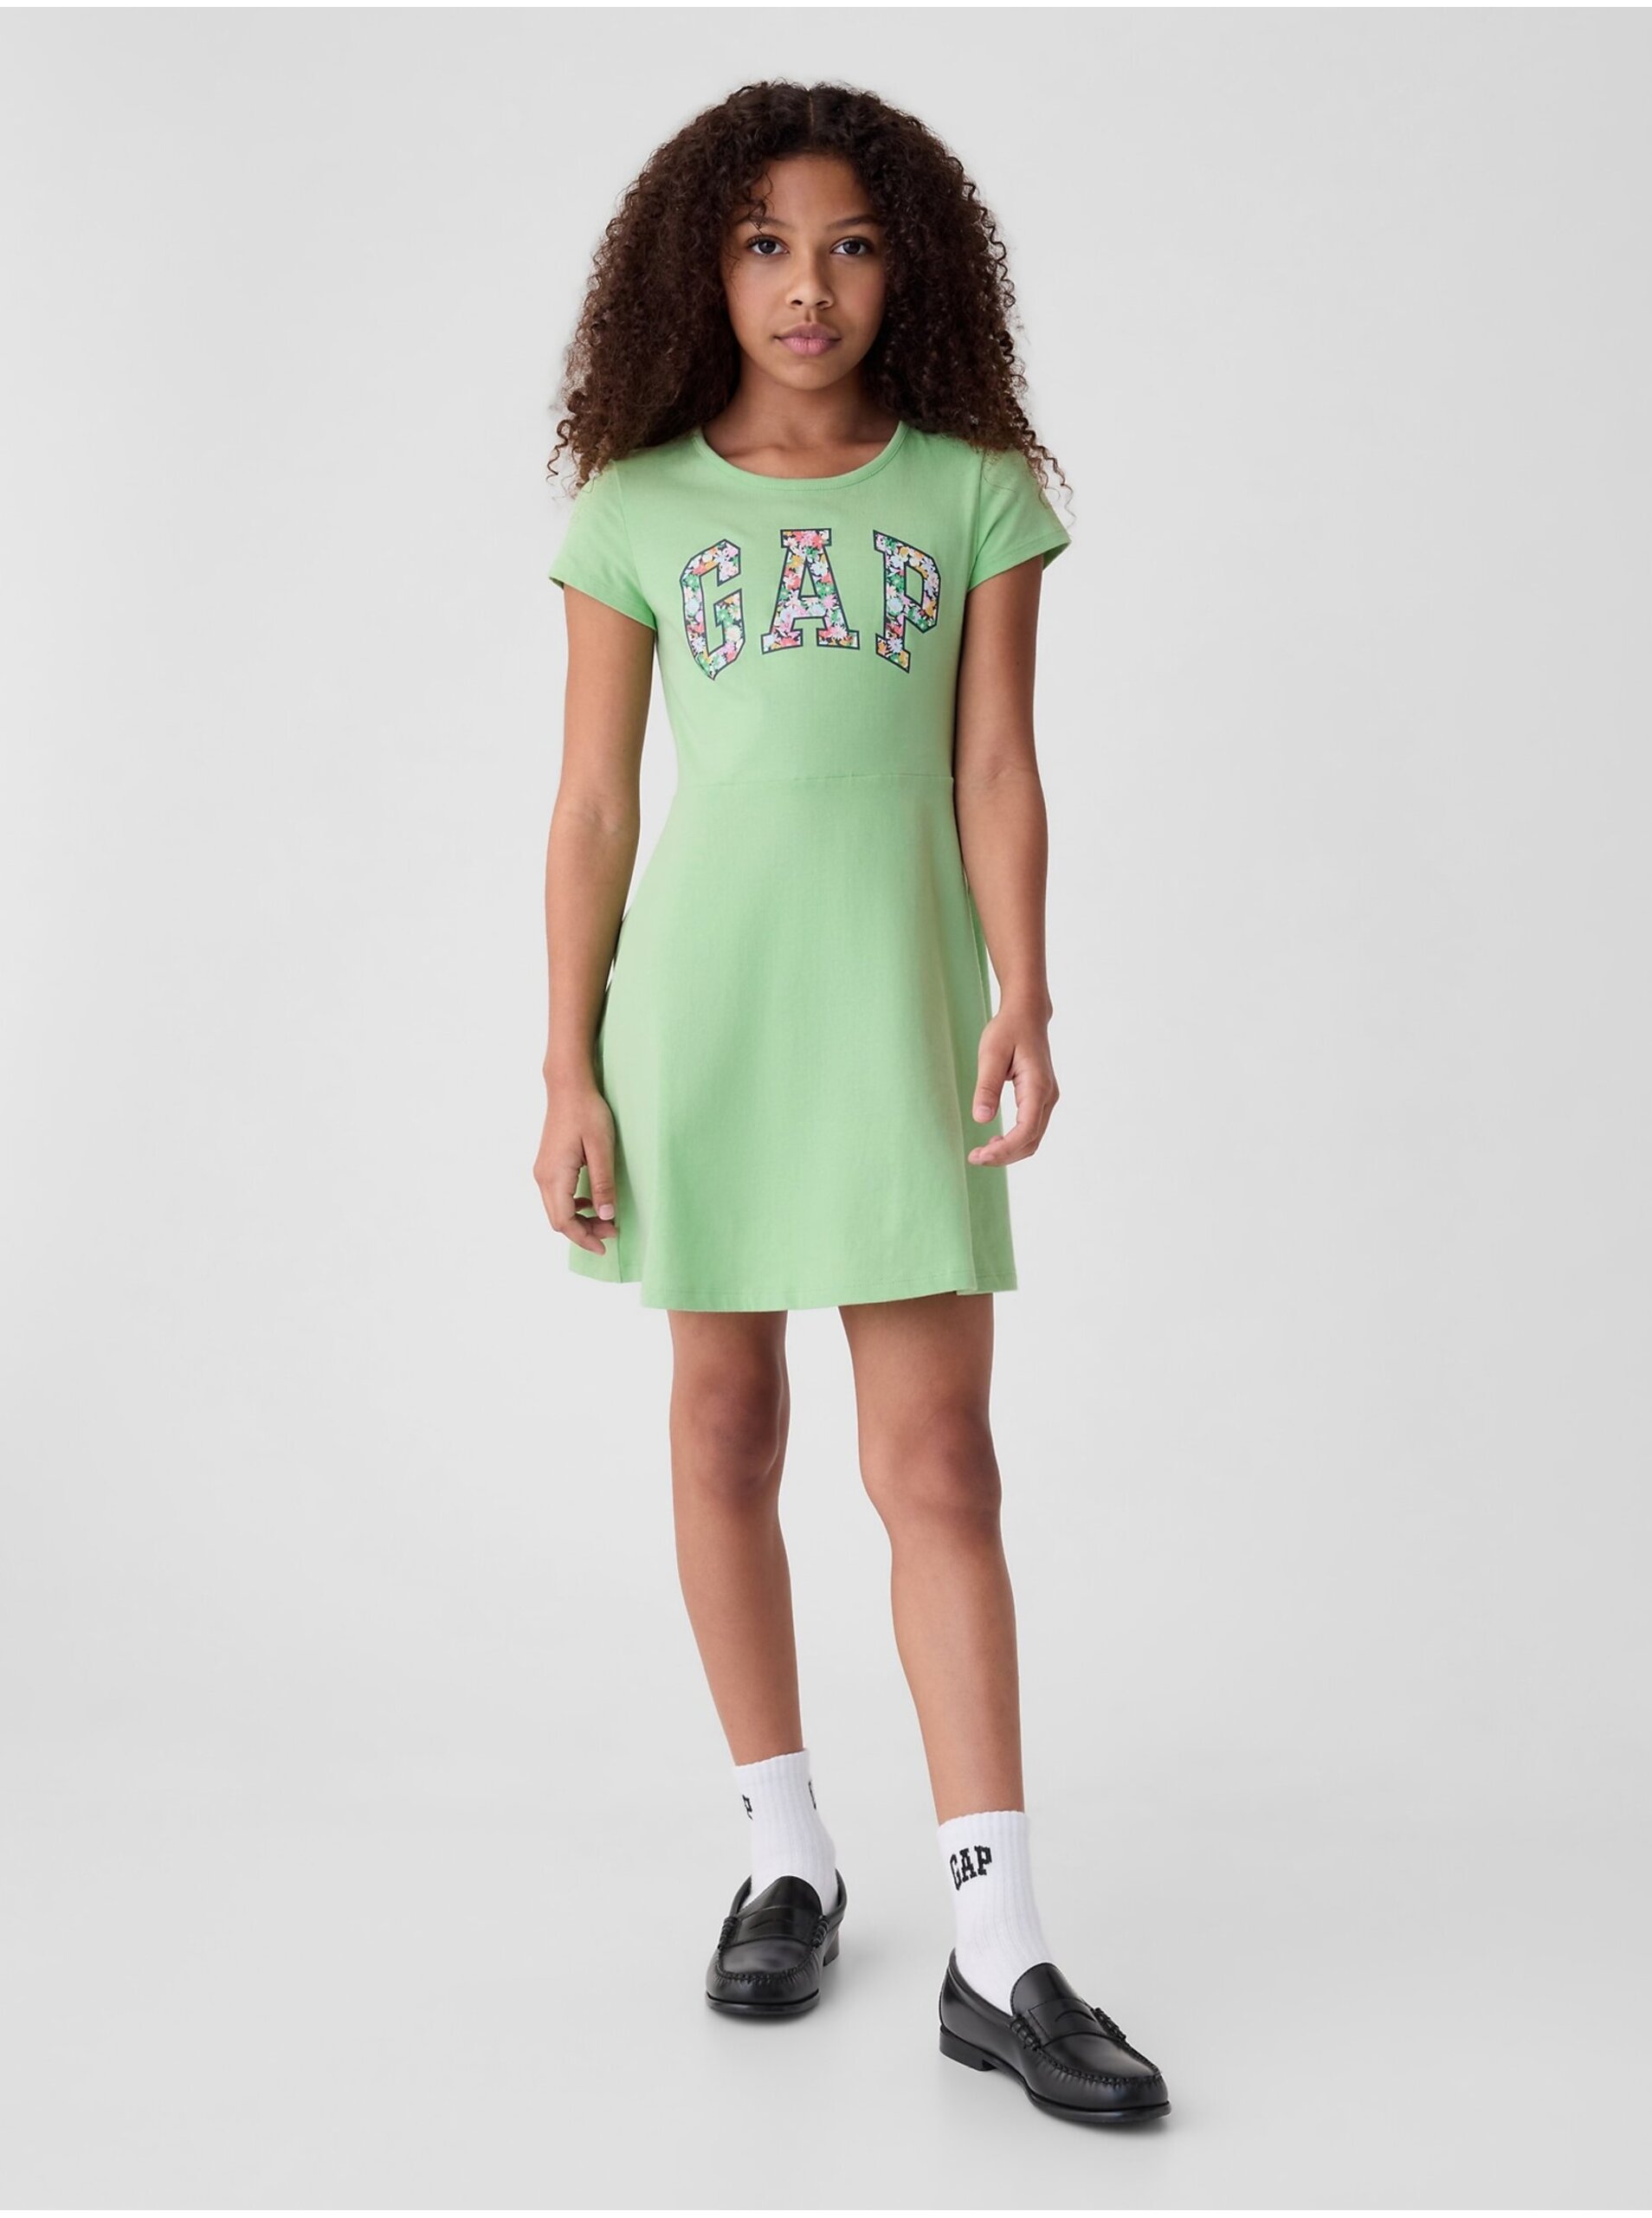 Lacno Svetlo zelené dievčenské šaty s logom GAP